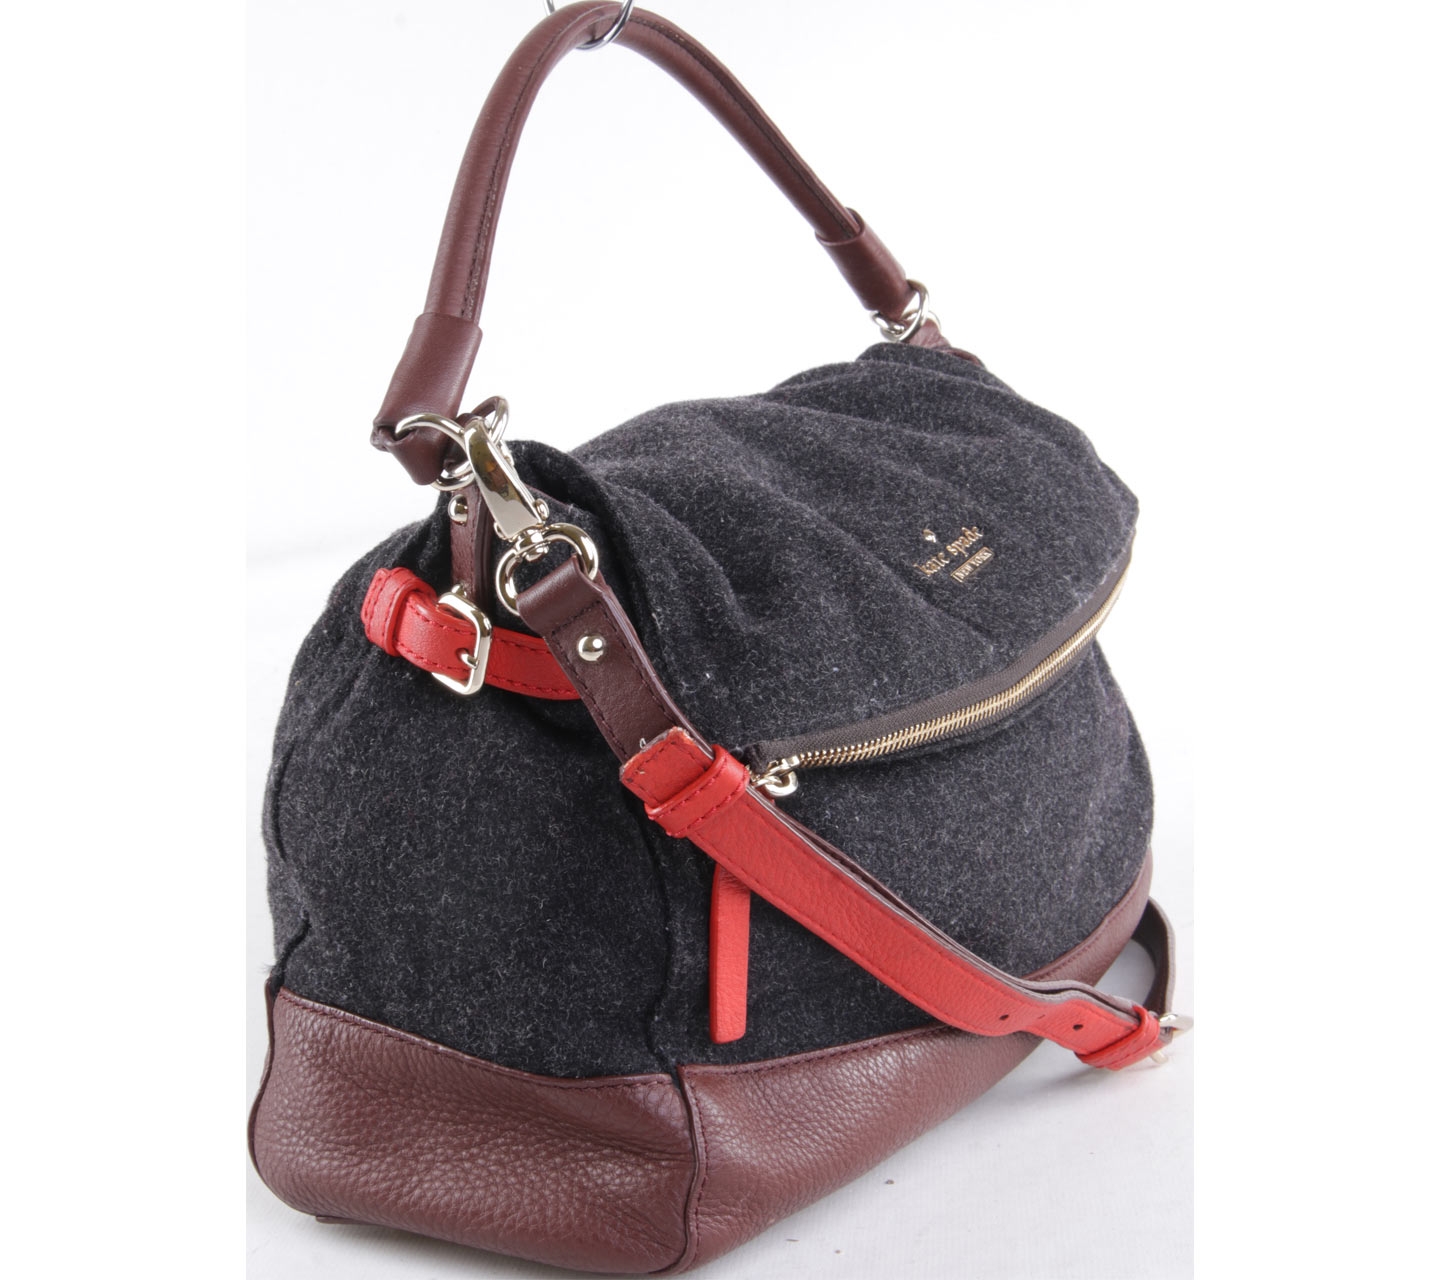 Kate Spade Black & Brown Satchel Bag